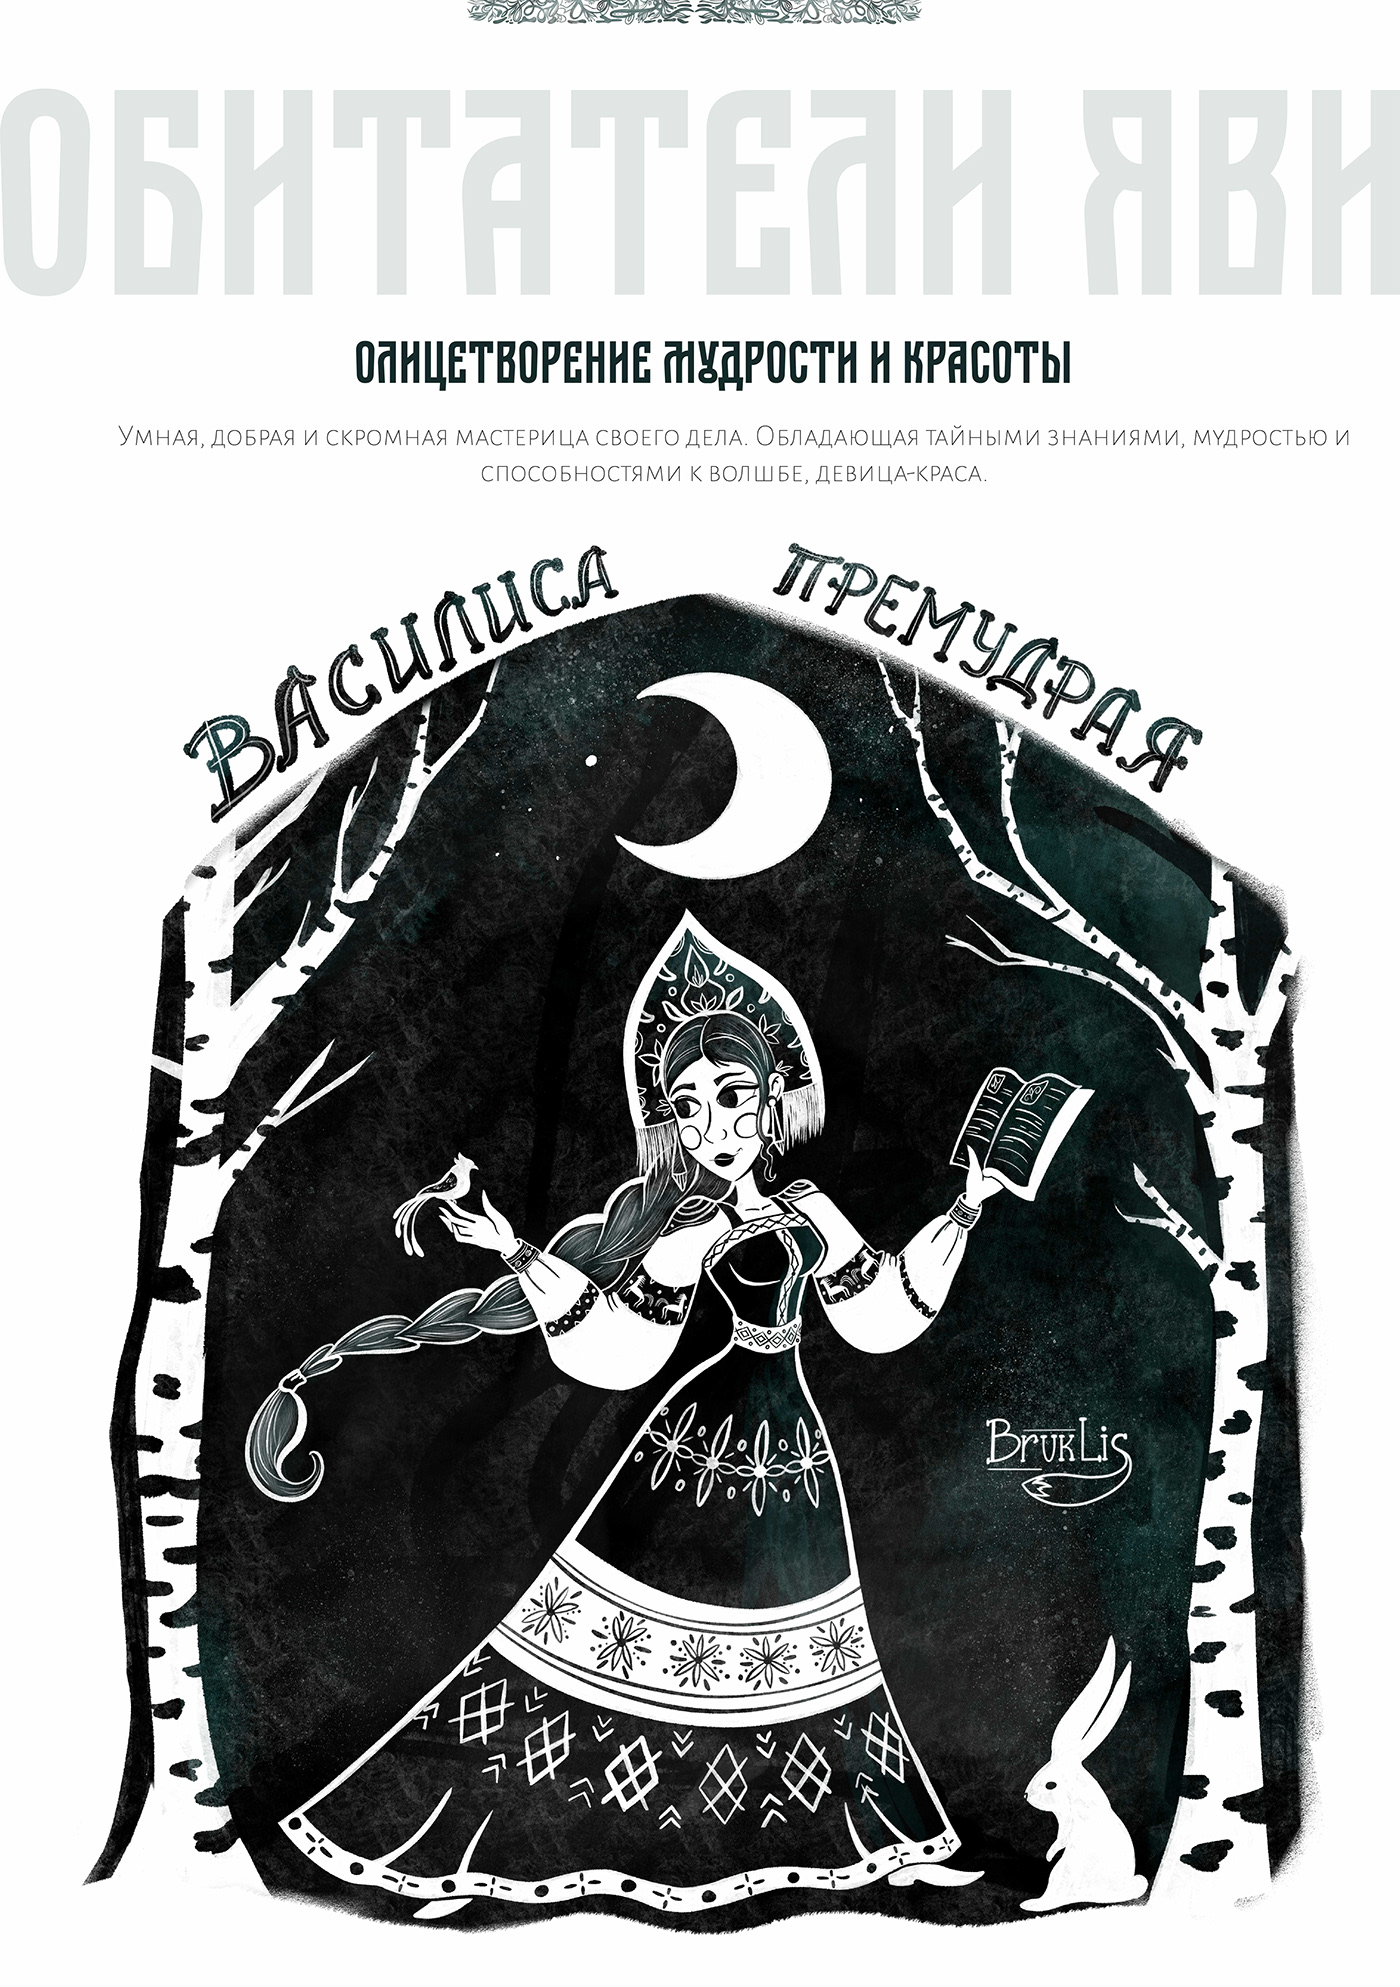 Ancient creature fairytale Folklore goddess gods inktober Magic   mythology Slavic